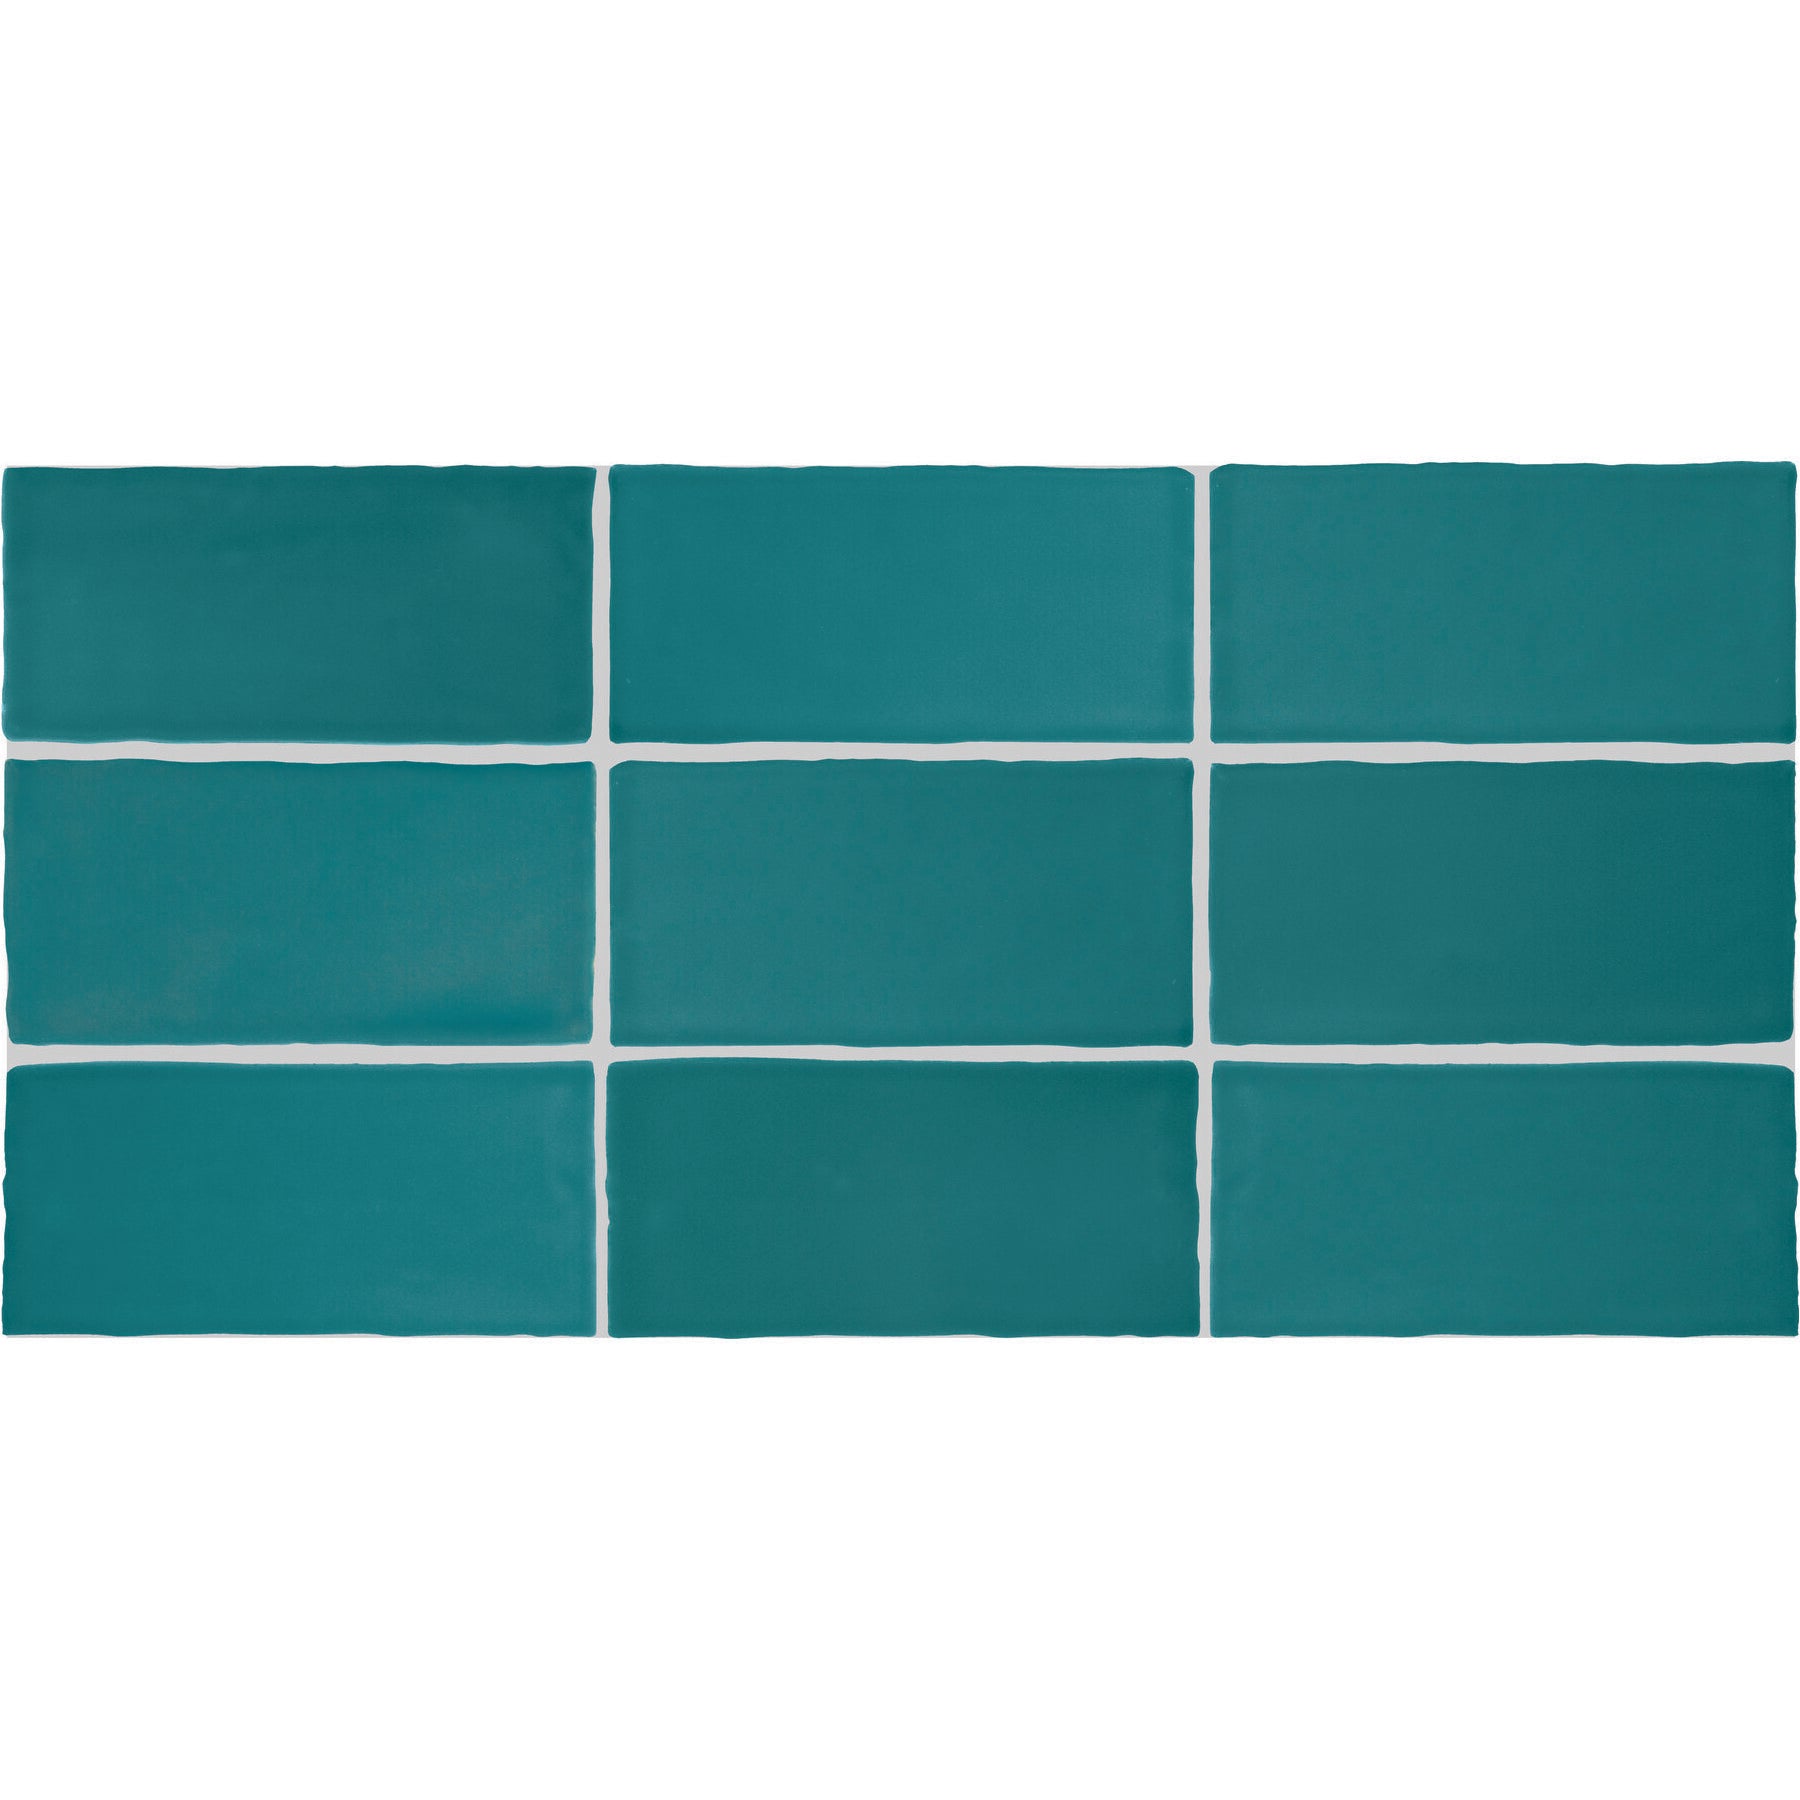 Daltile - Farrier - 2.5 in. x 5 in. Glazed Ceramic Wall Tile - Blue Roan